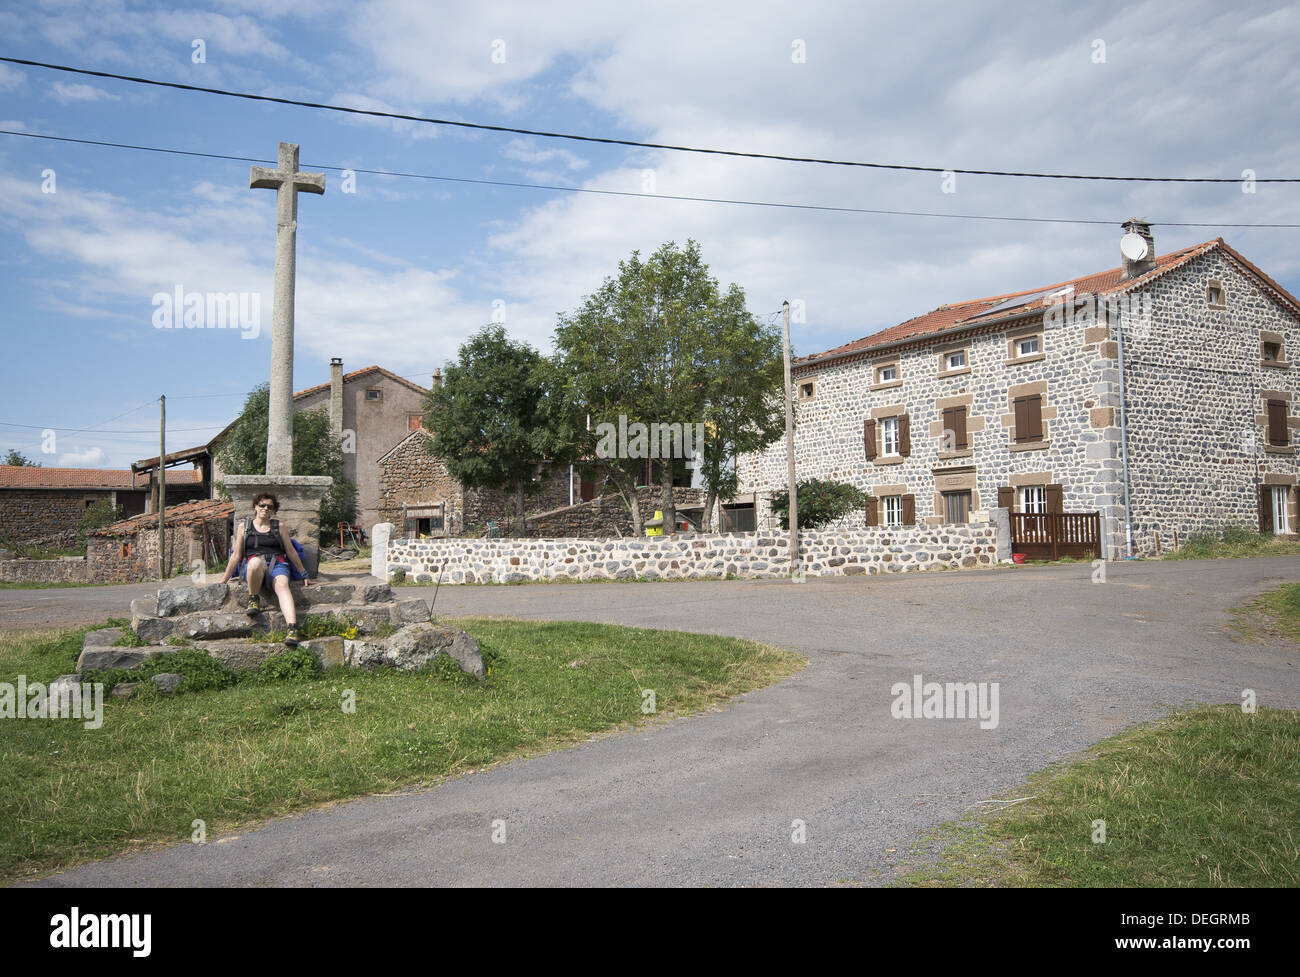 Il pittoresco villaggio di le Chier sulla rotta GR65, il Camino de Santiago, Francia Foto Stock